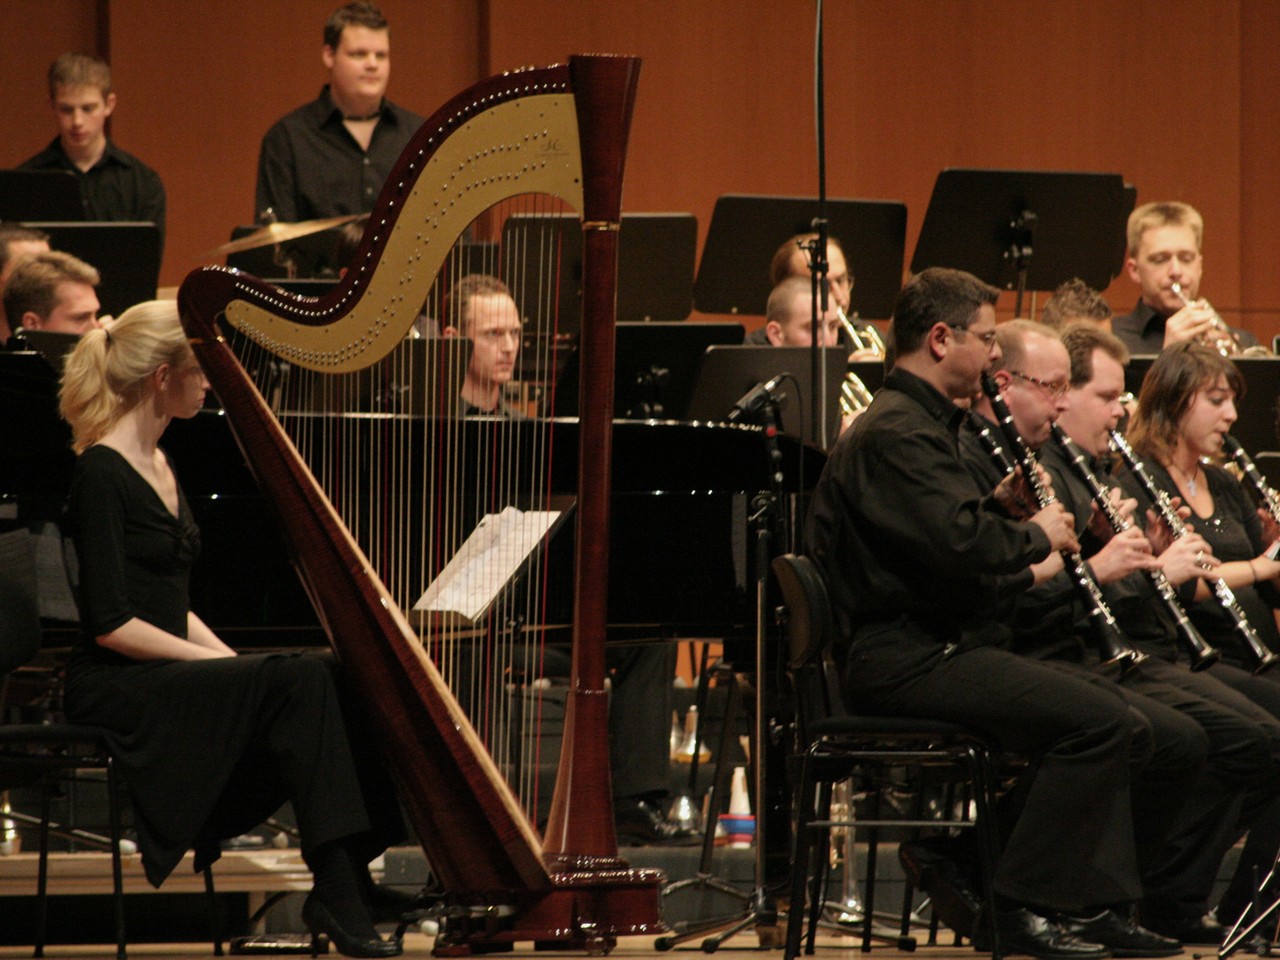 Harfa jako narodowy symbol Irlandii